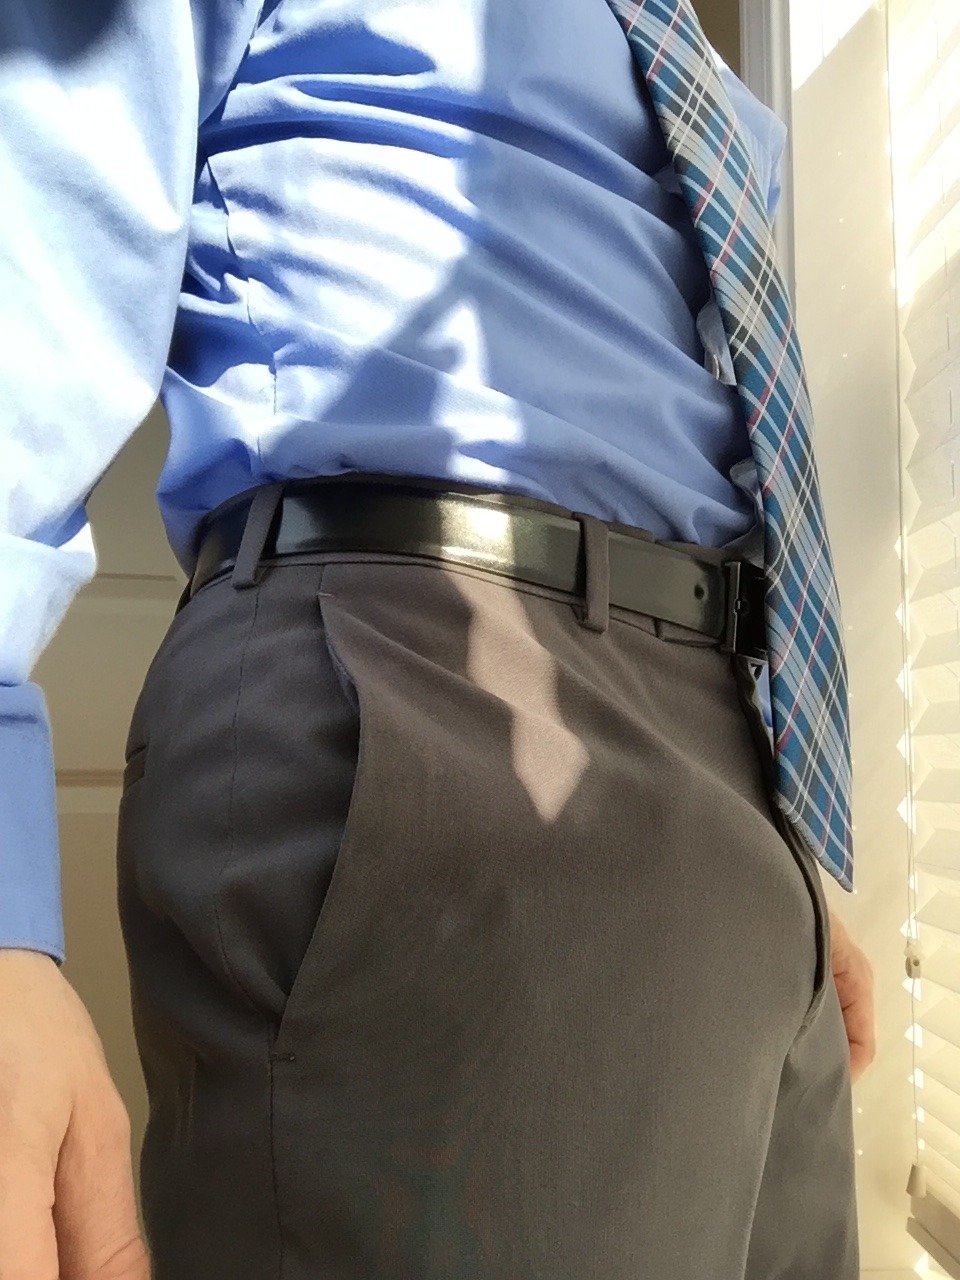 Bulging in work attire.